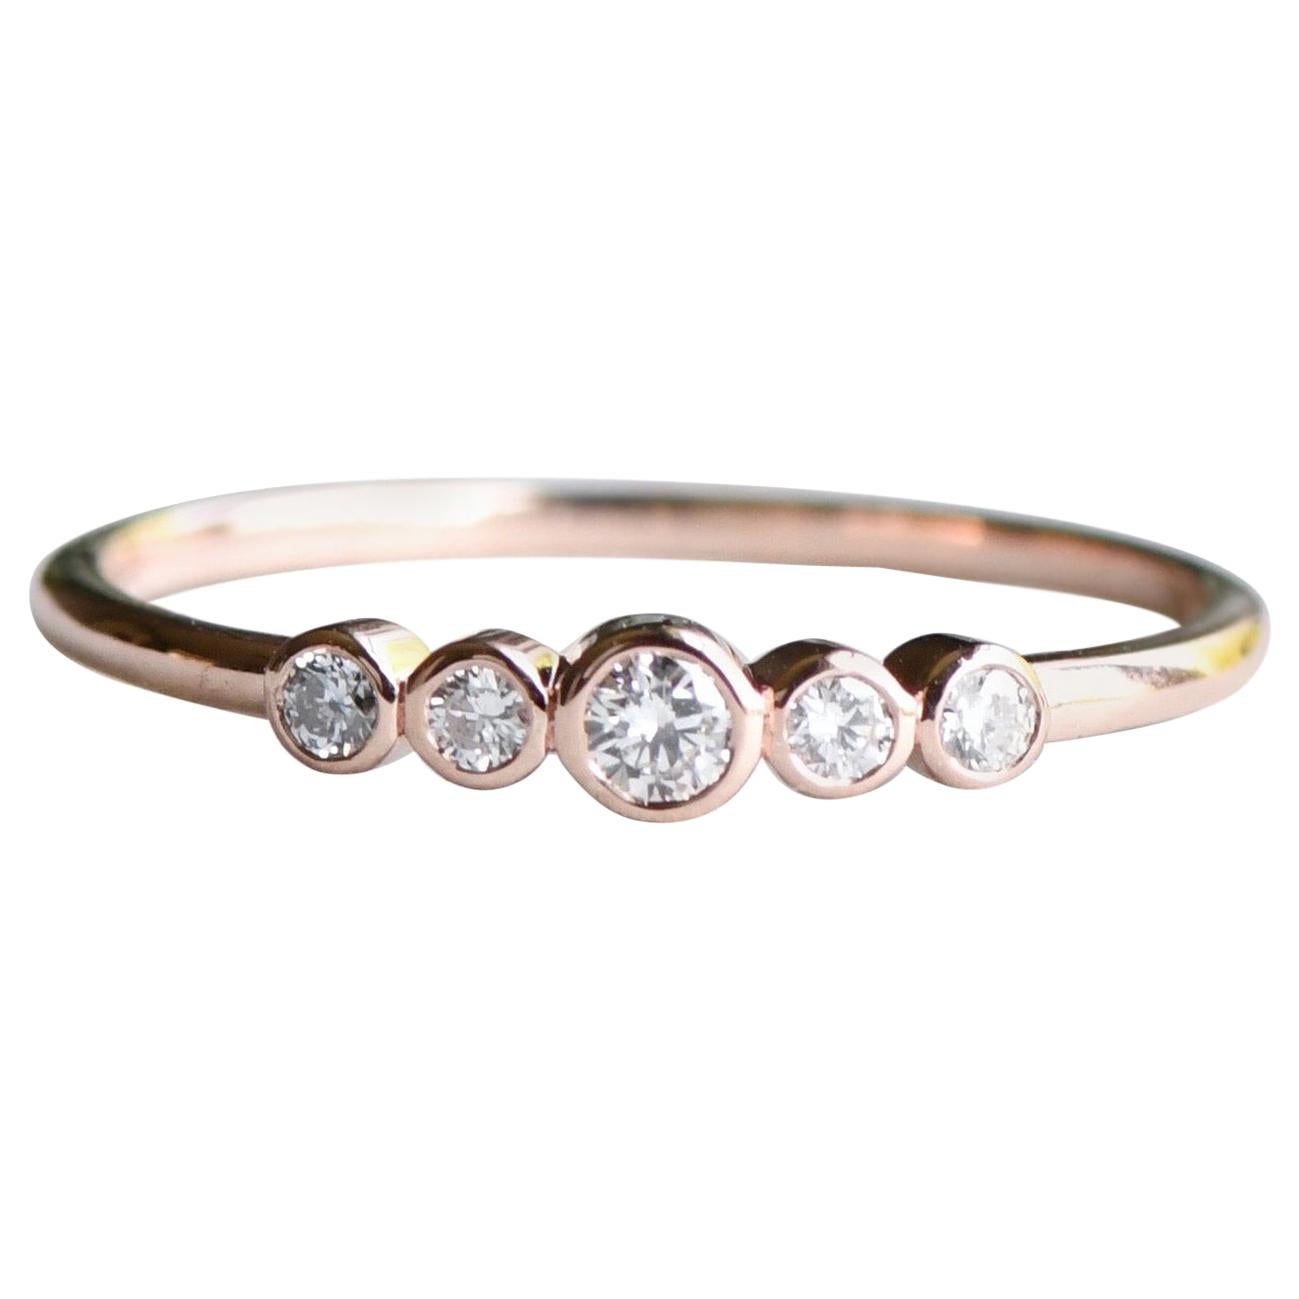 For Sale:  18 Karat Five Stone Diamonds Ring, Rose Gold Ring, Stacking Ring